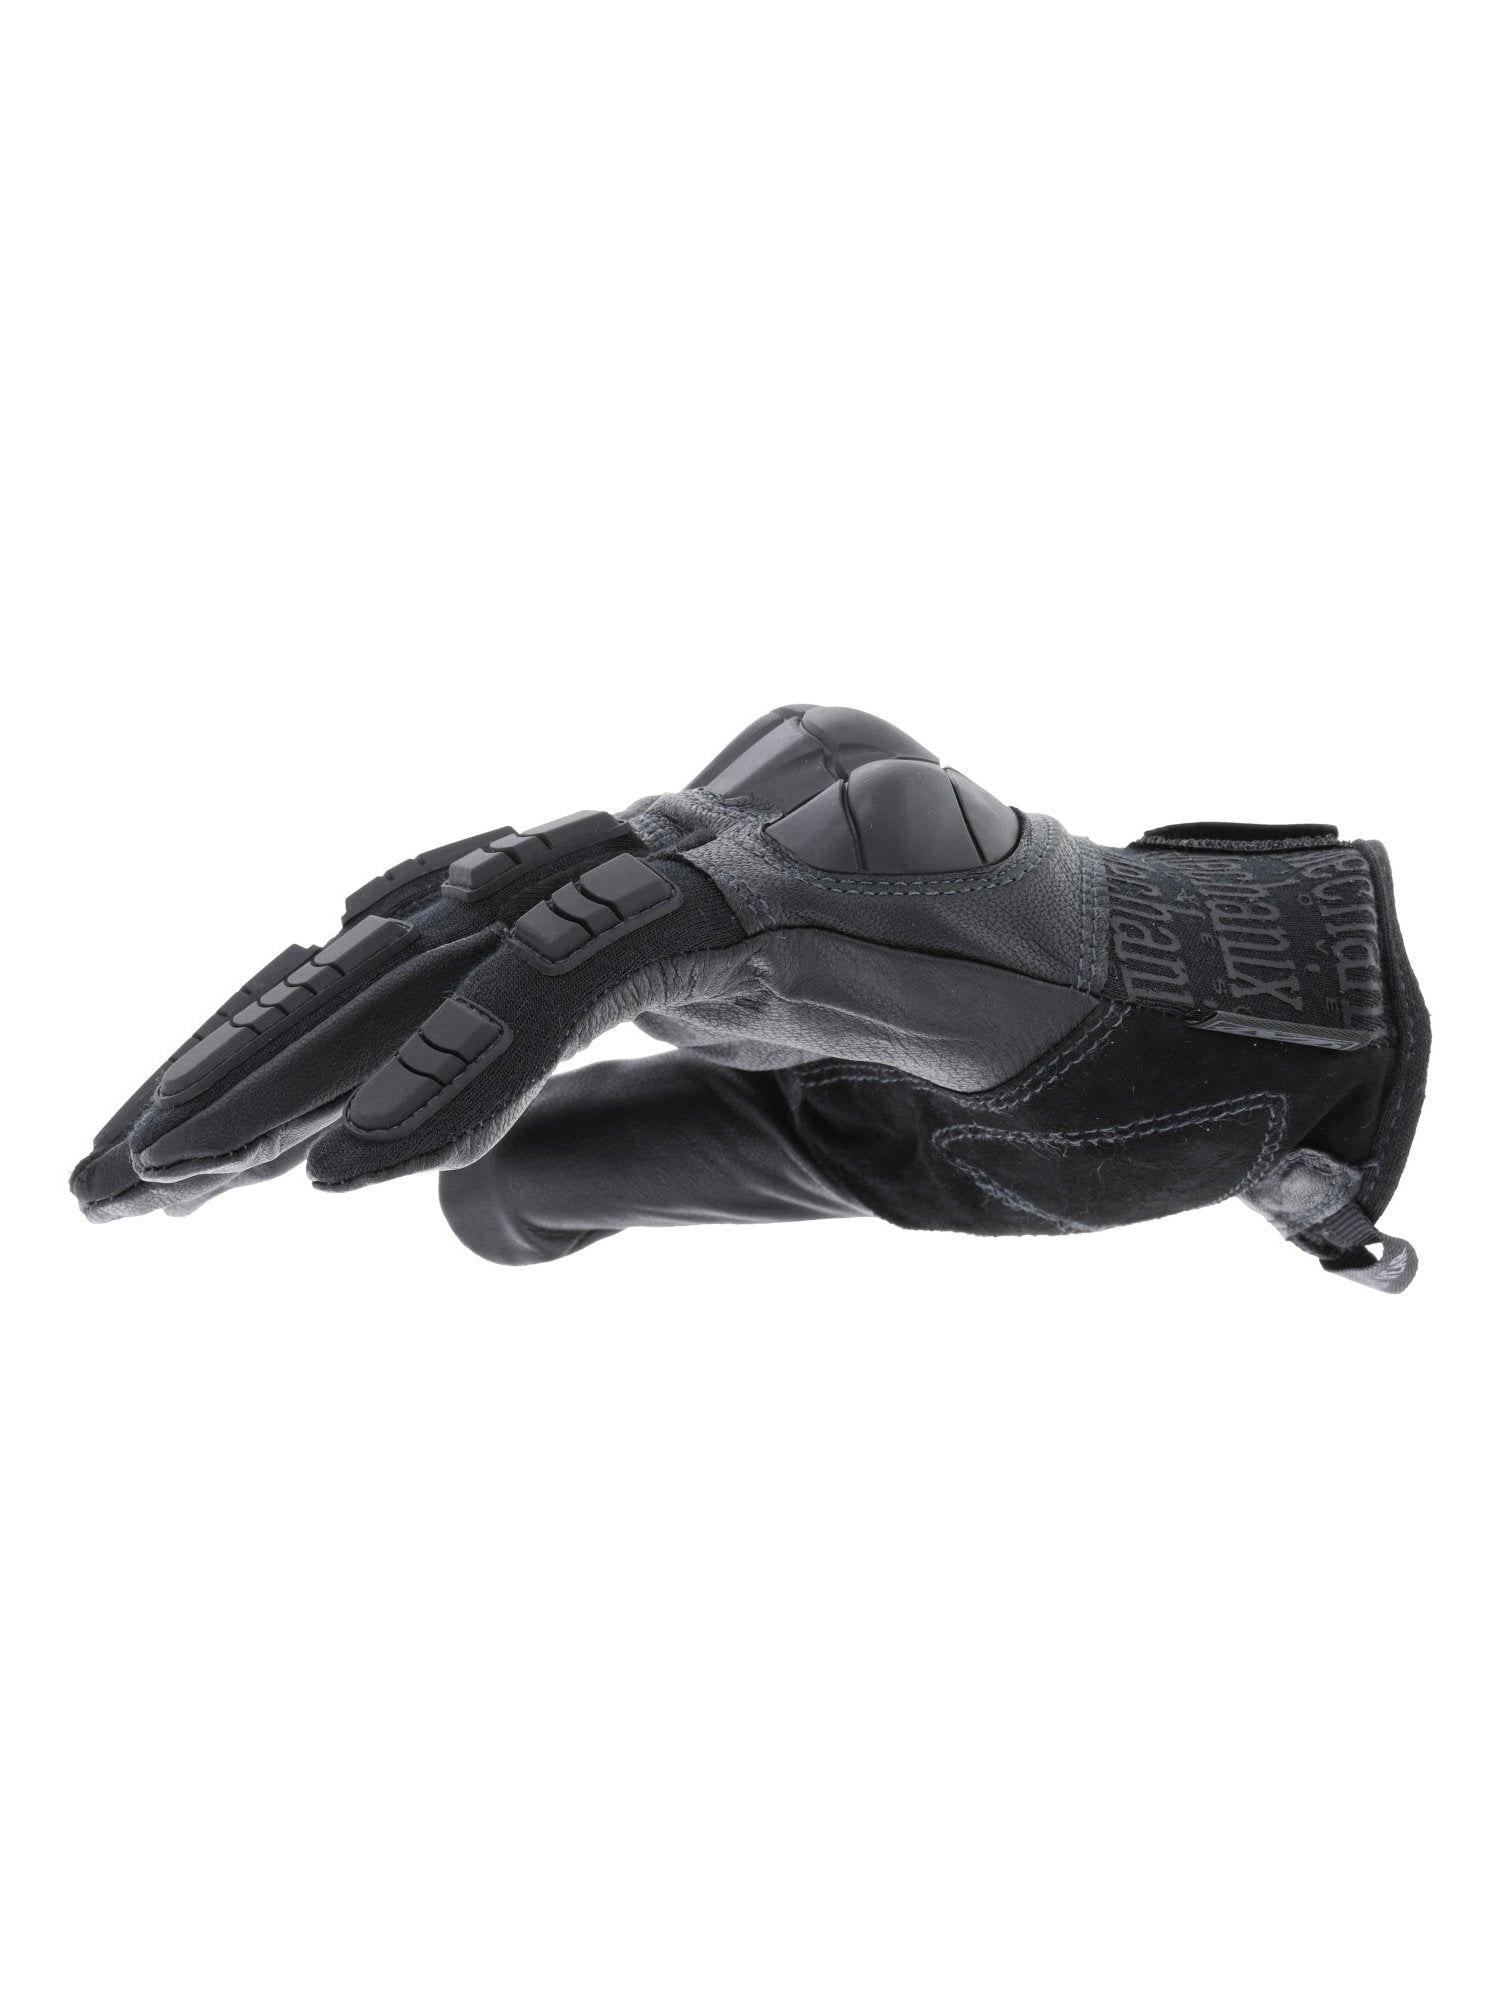 Mechanix Wear Breacher Glove - TacSource